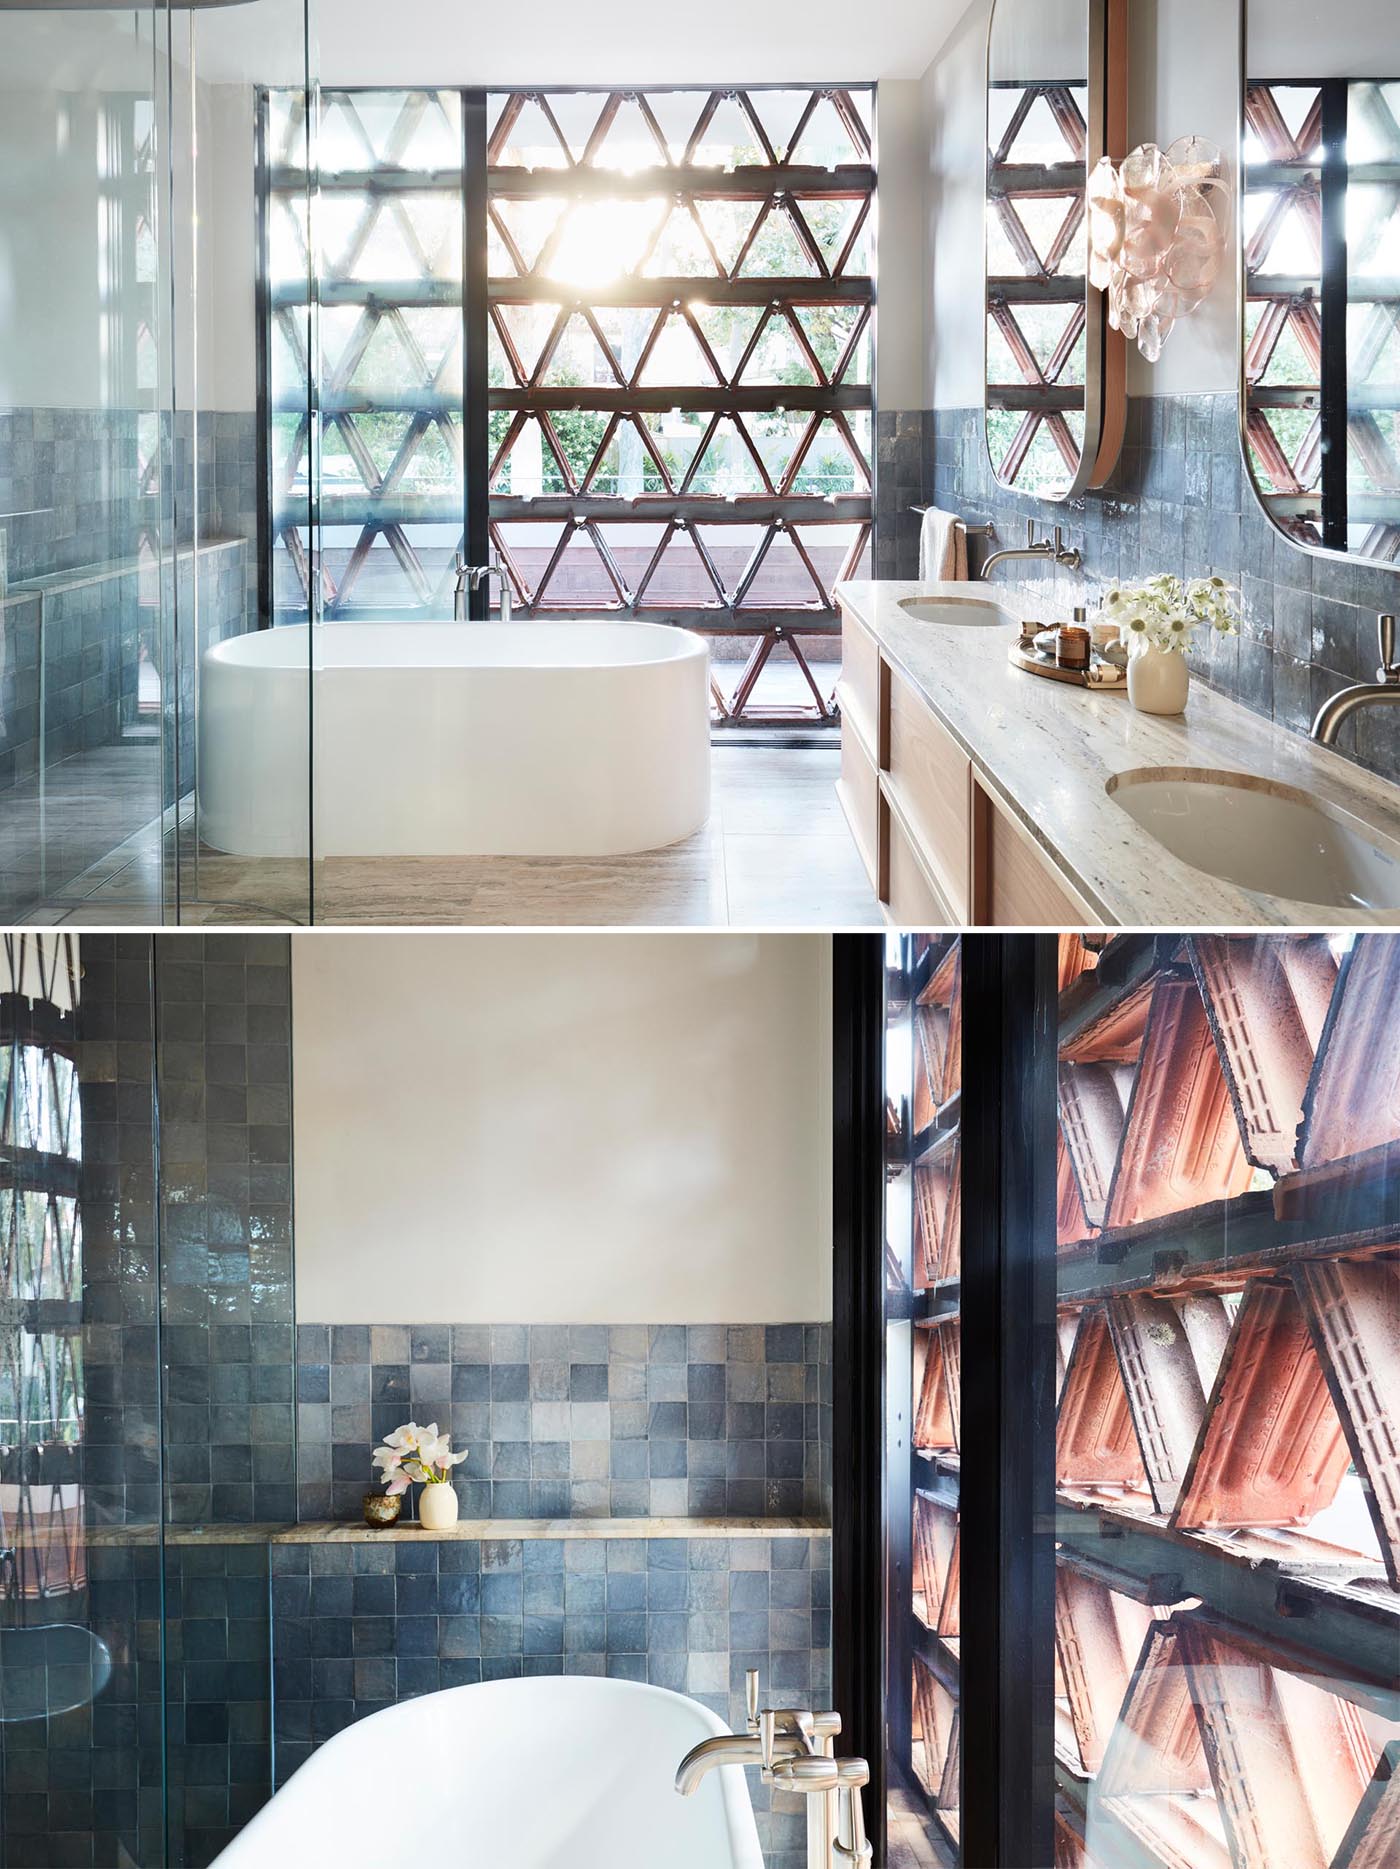 В этой современной главной ванной комнате brise soleil обеспечивает уединение и в то же время пропускает ветерок.